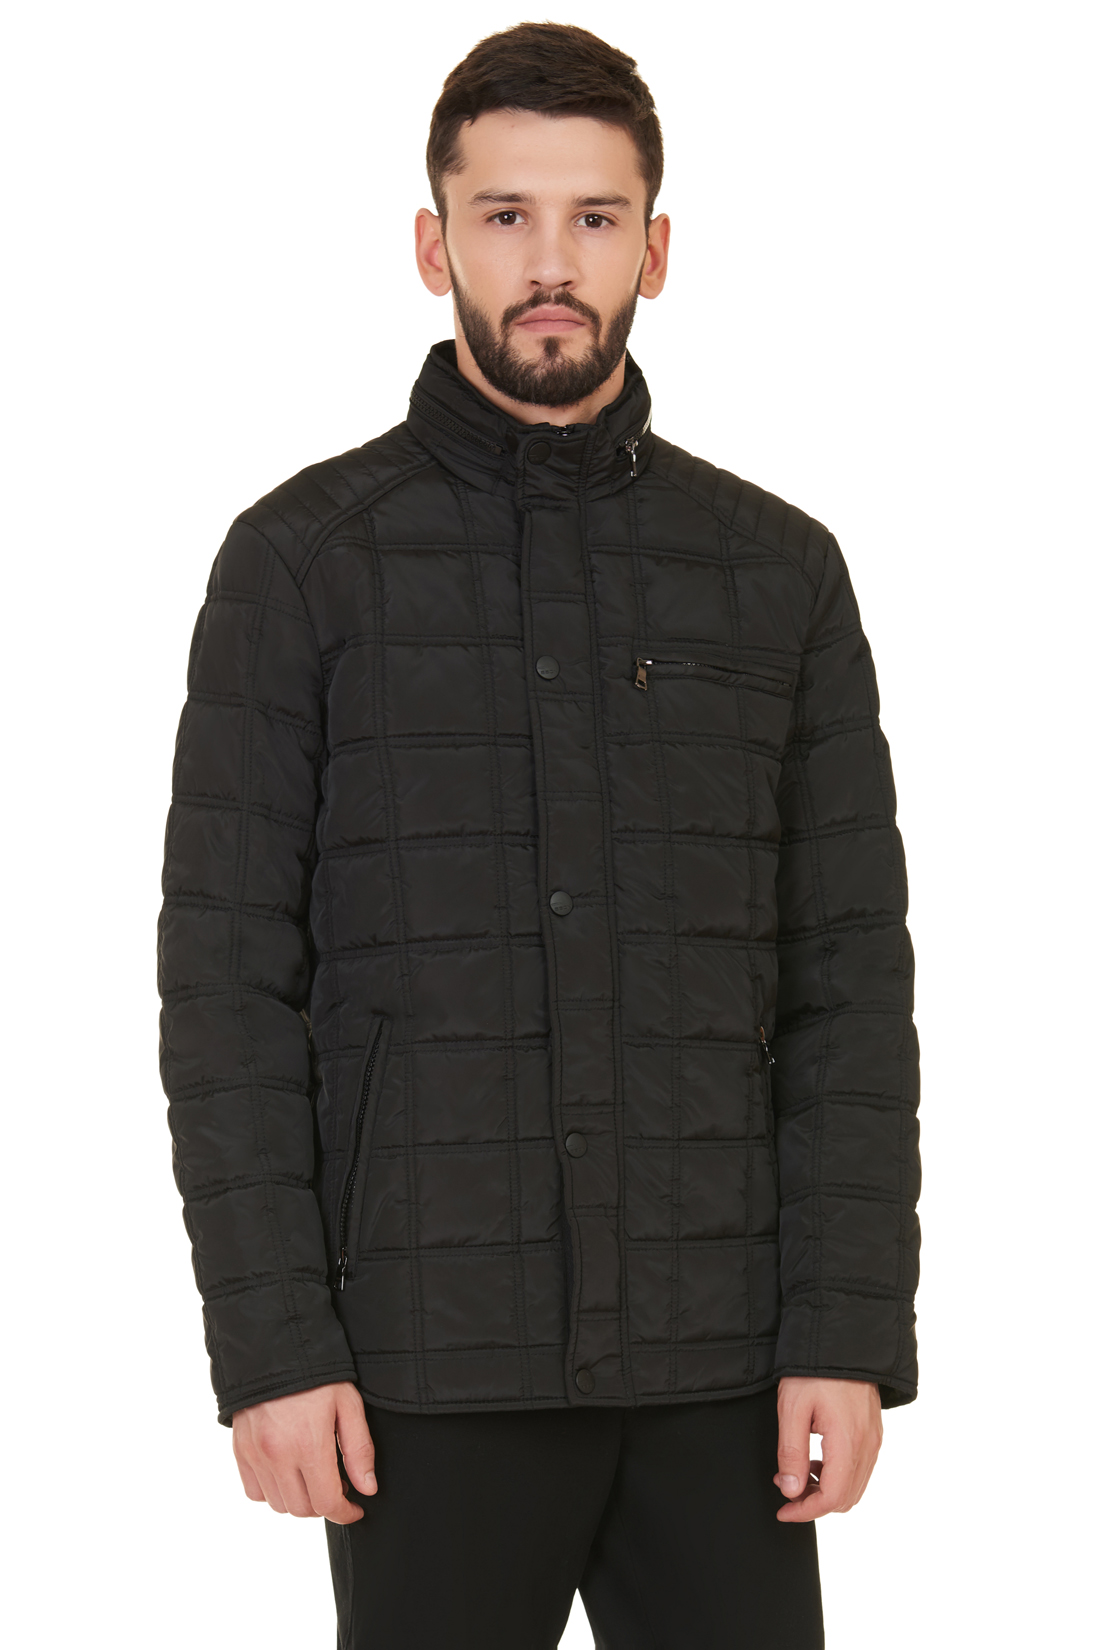 Куртка в байкерском стиле (арт. baon B537549), размер L, цвет черный Куртка в байкерском стиле (арт. baon B537549) - фото 1